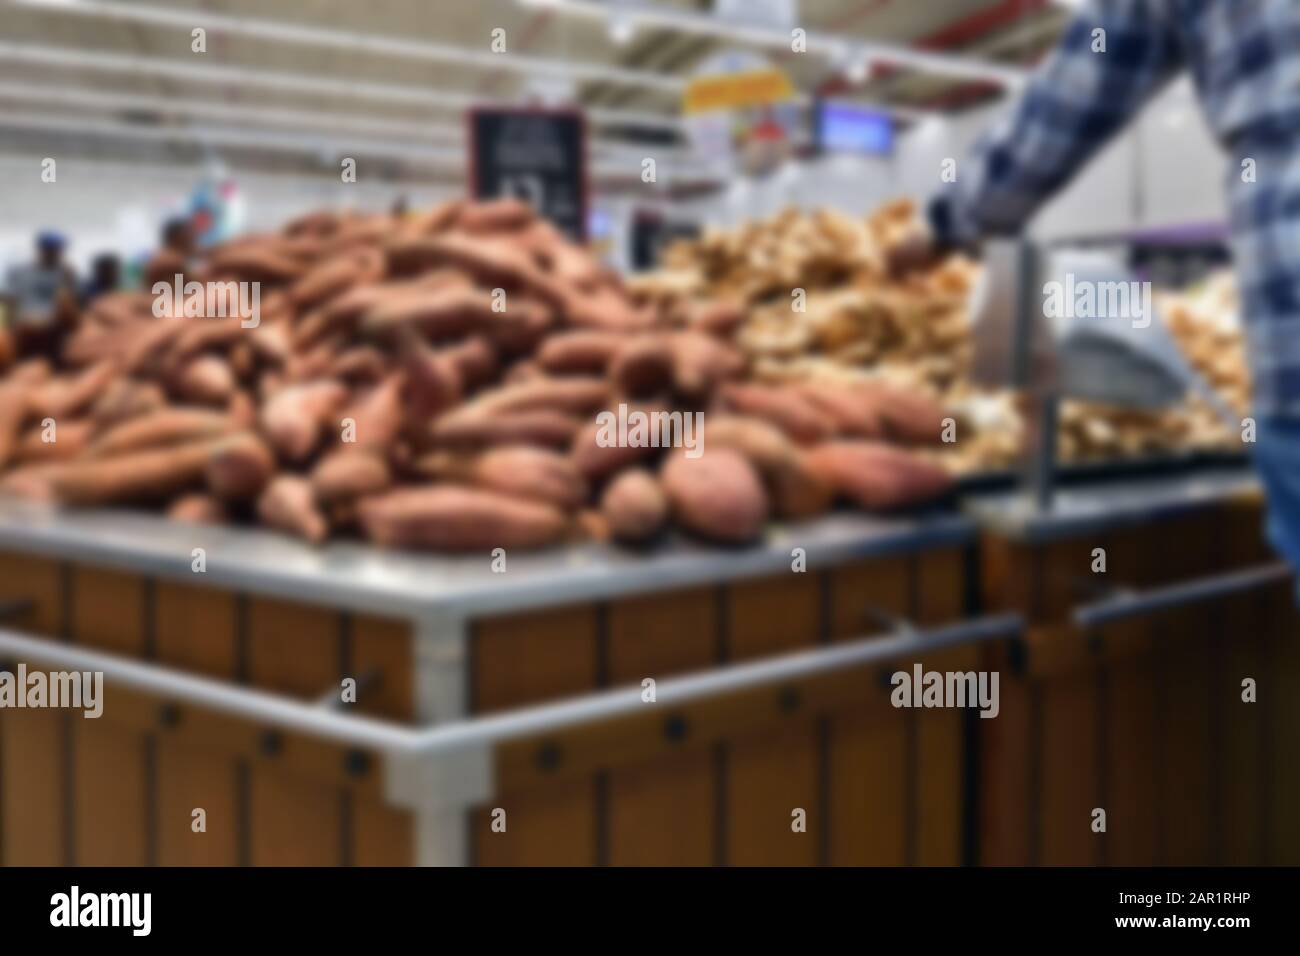 Batata australiana en el supermercado. Cerca del este. Fondo difuminado Foto de stock